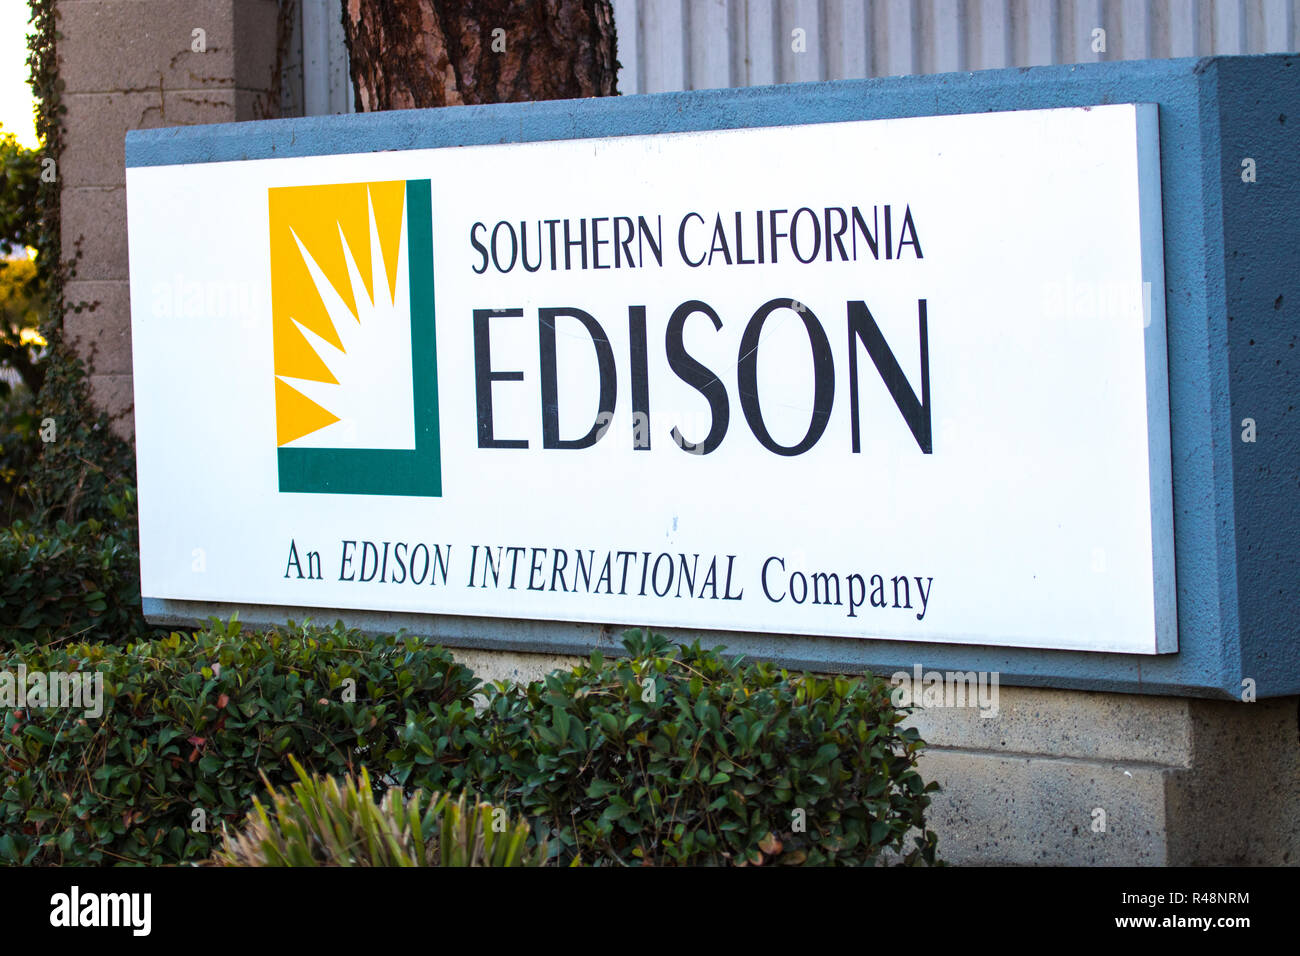 Southern California Edison strom Unternehmen unterzeichnen in Kalifornien USA Stockfoto